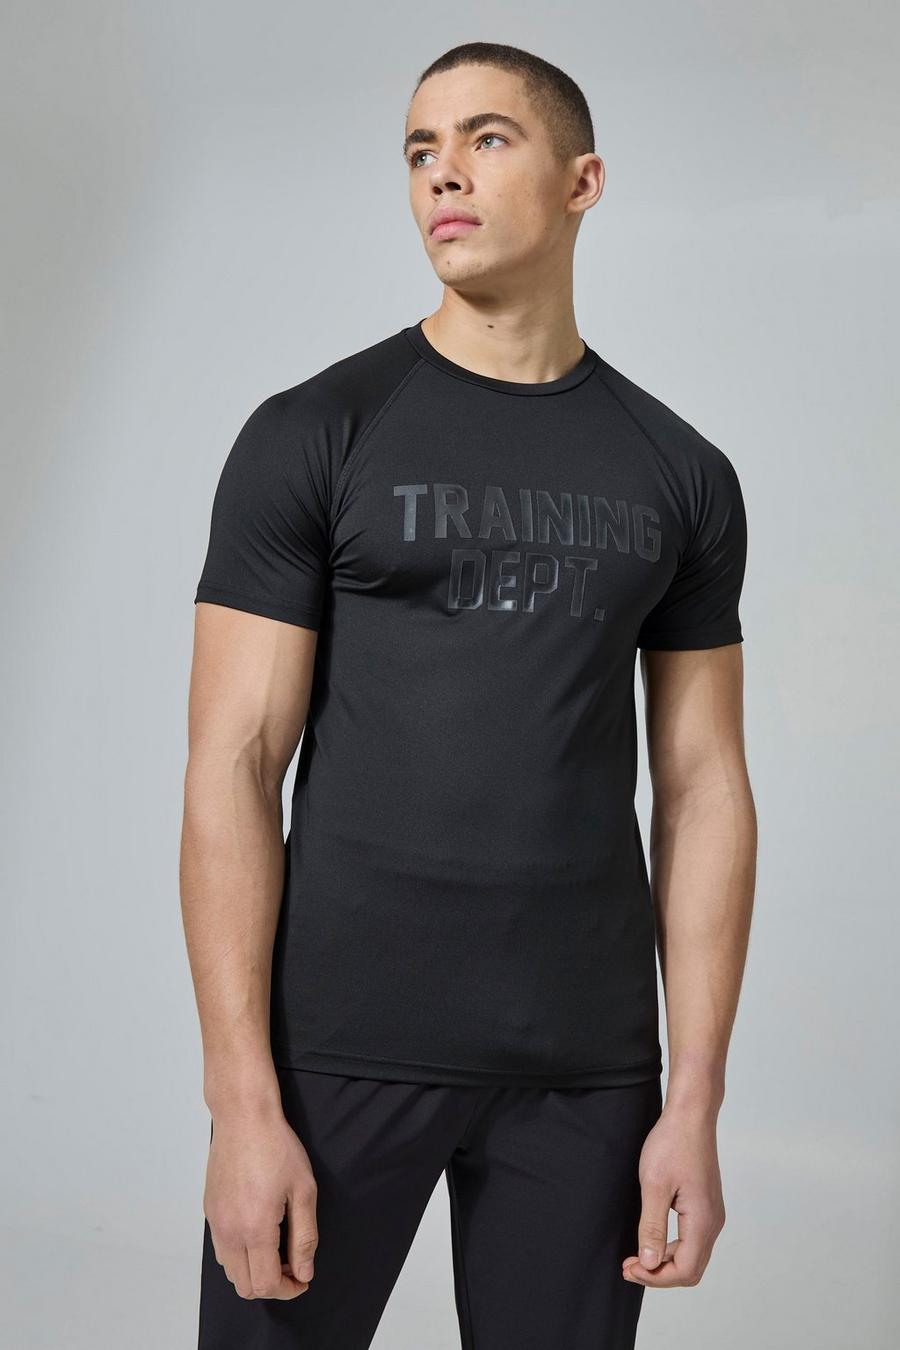 Camiseta Active ajustada al músculo con estampado Training Dept, Black